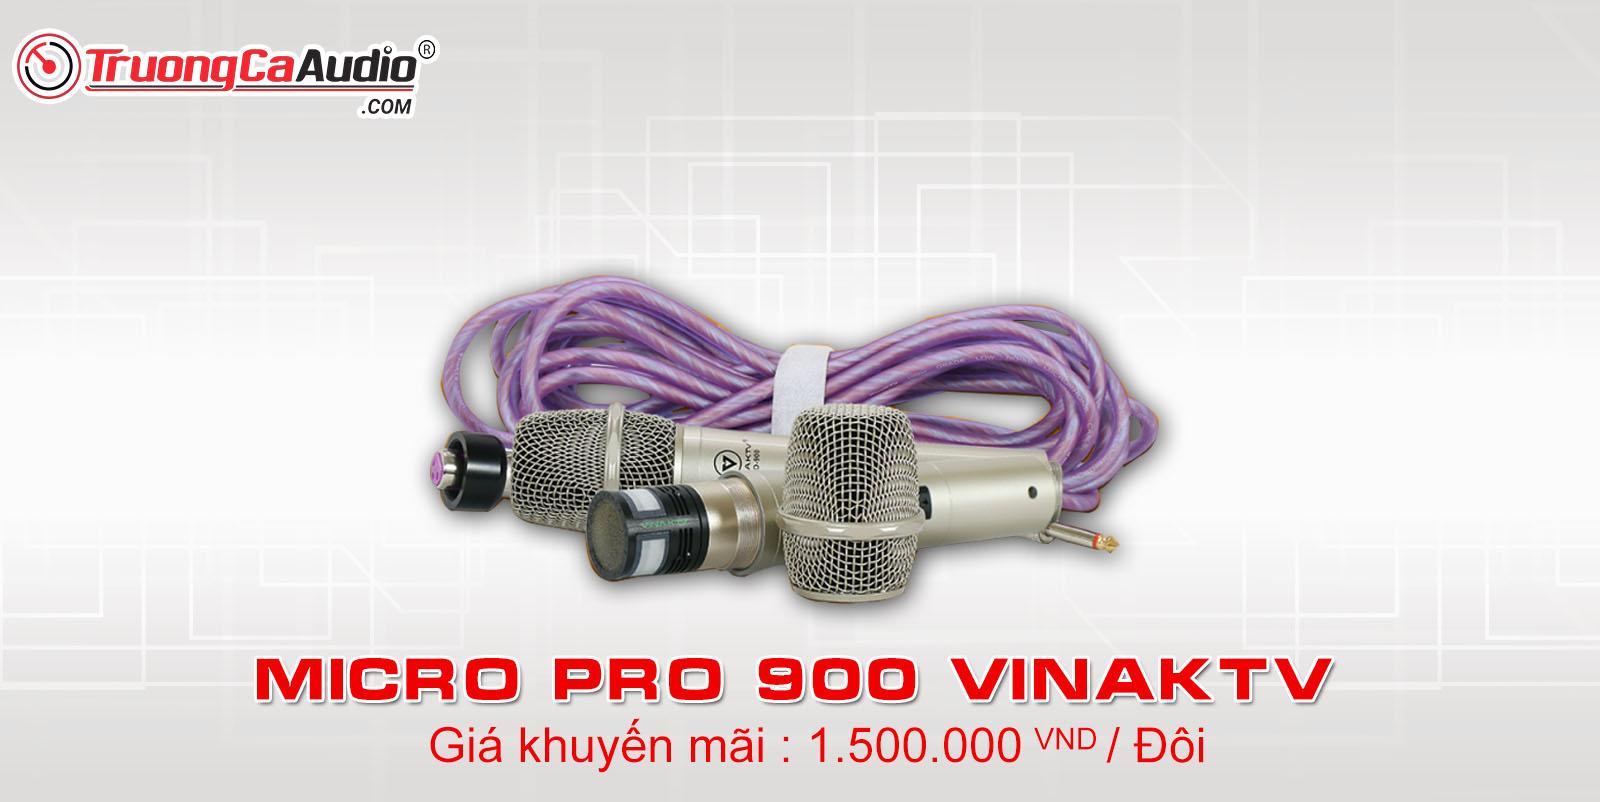 Micro vinaKTV Pro 900 